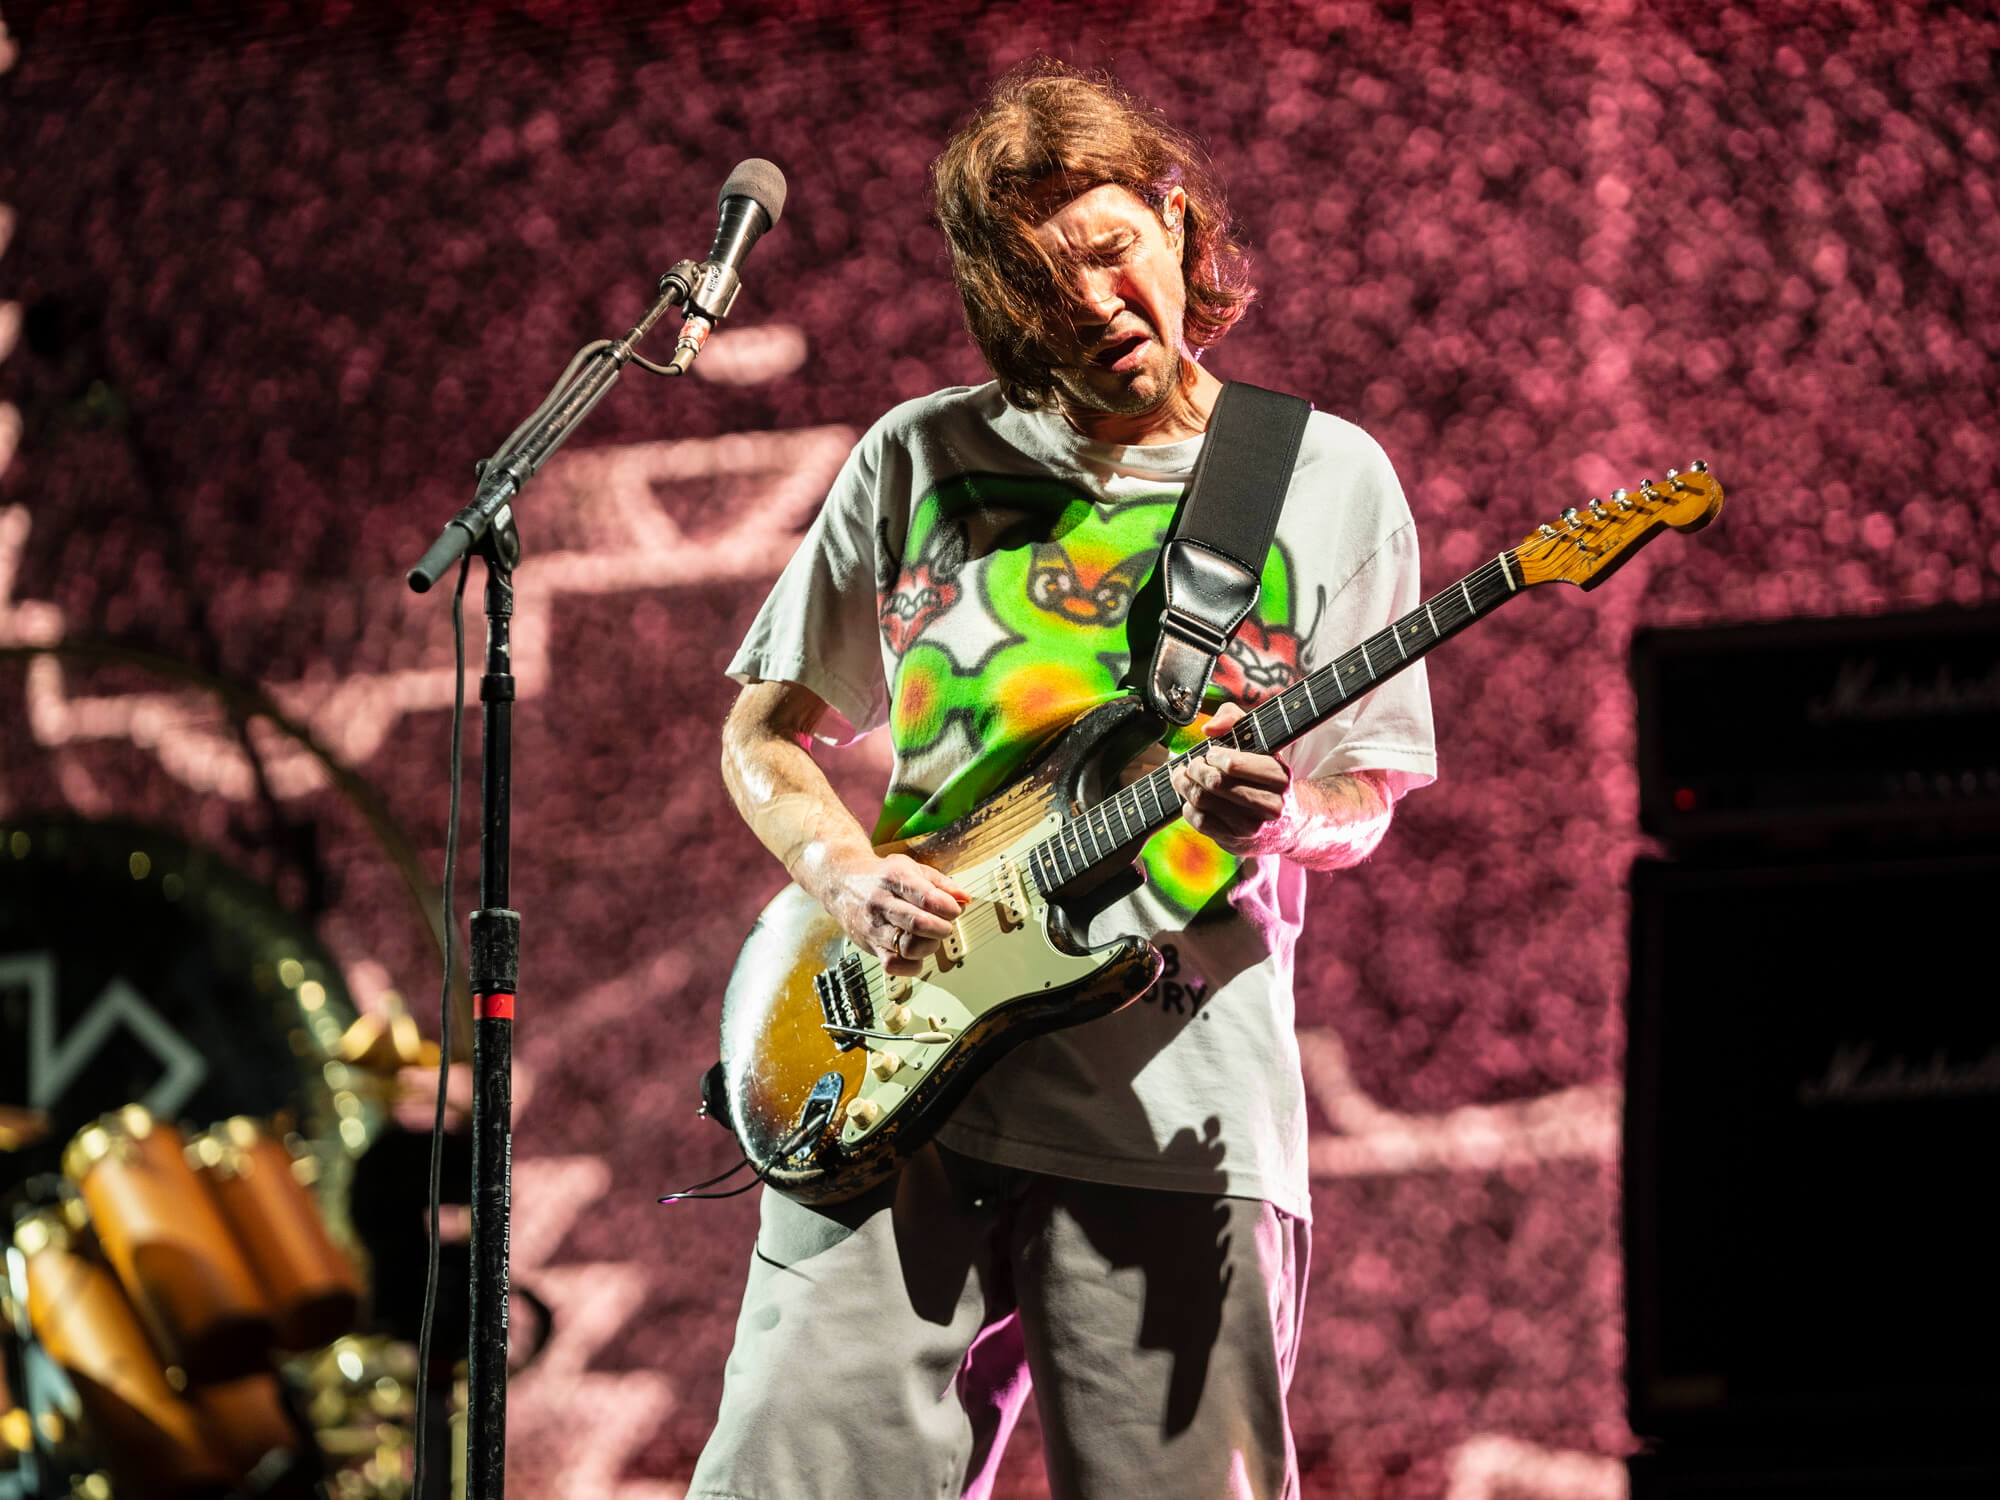 John Frusciante playing guitar